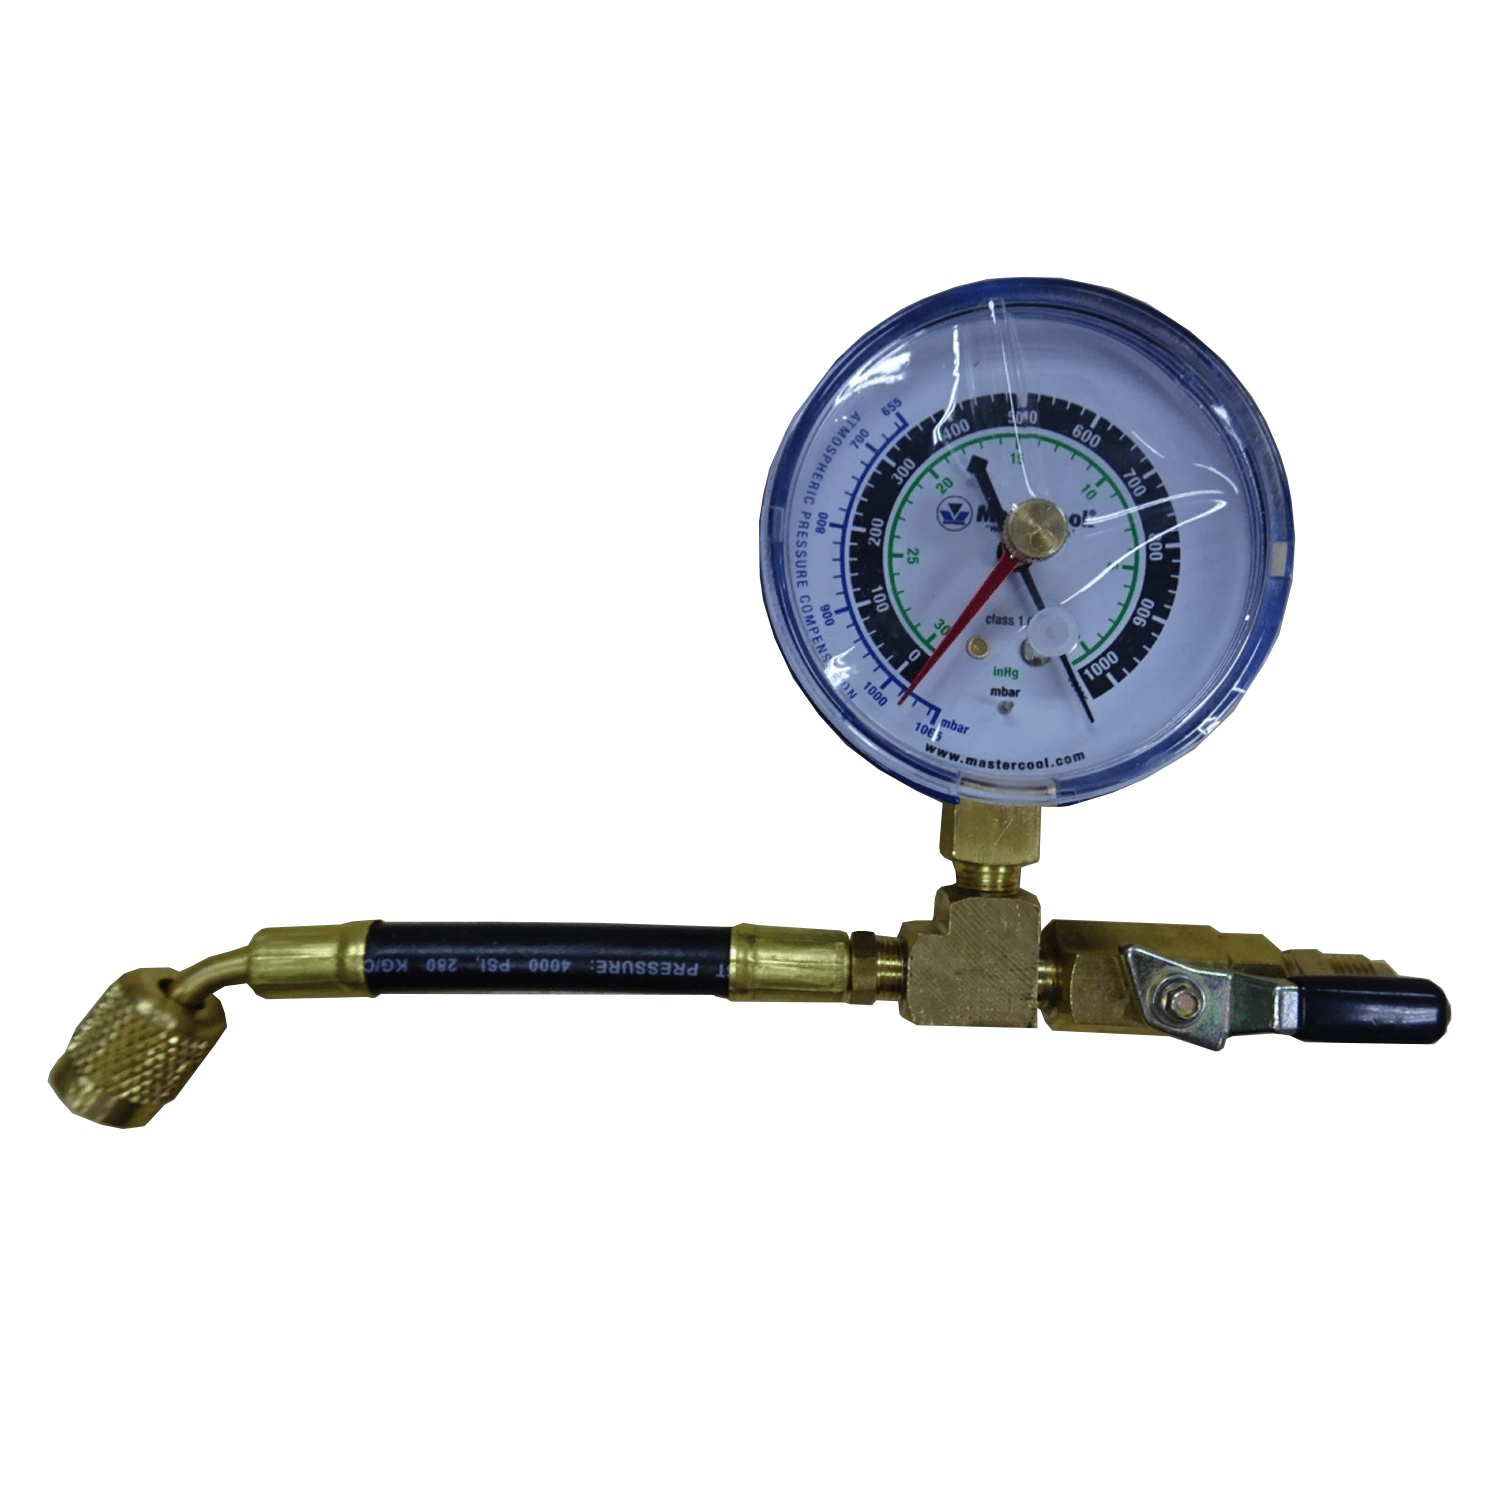 Analoge vacuümmeter met regelklep 1/4 "Torch Jack x 1/4" Torch Plug